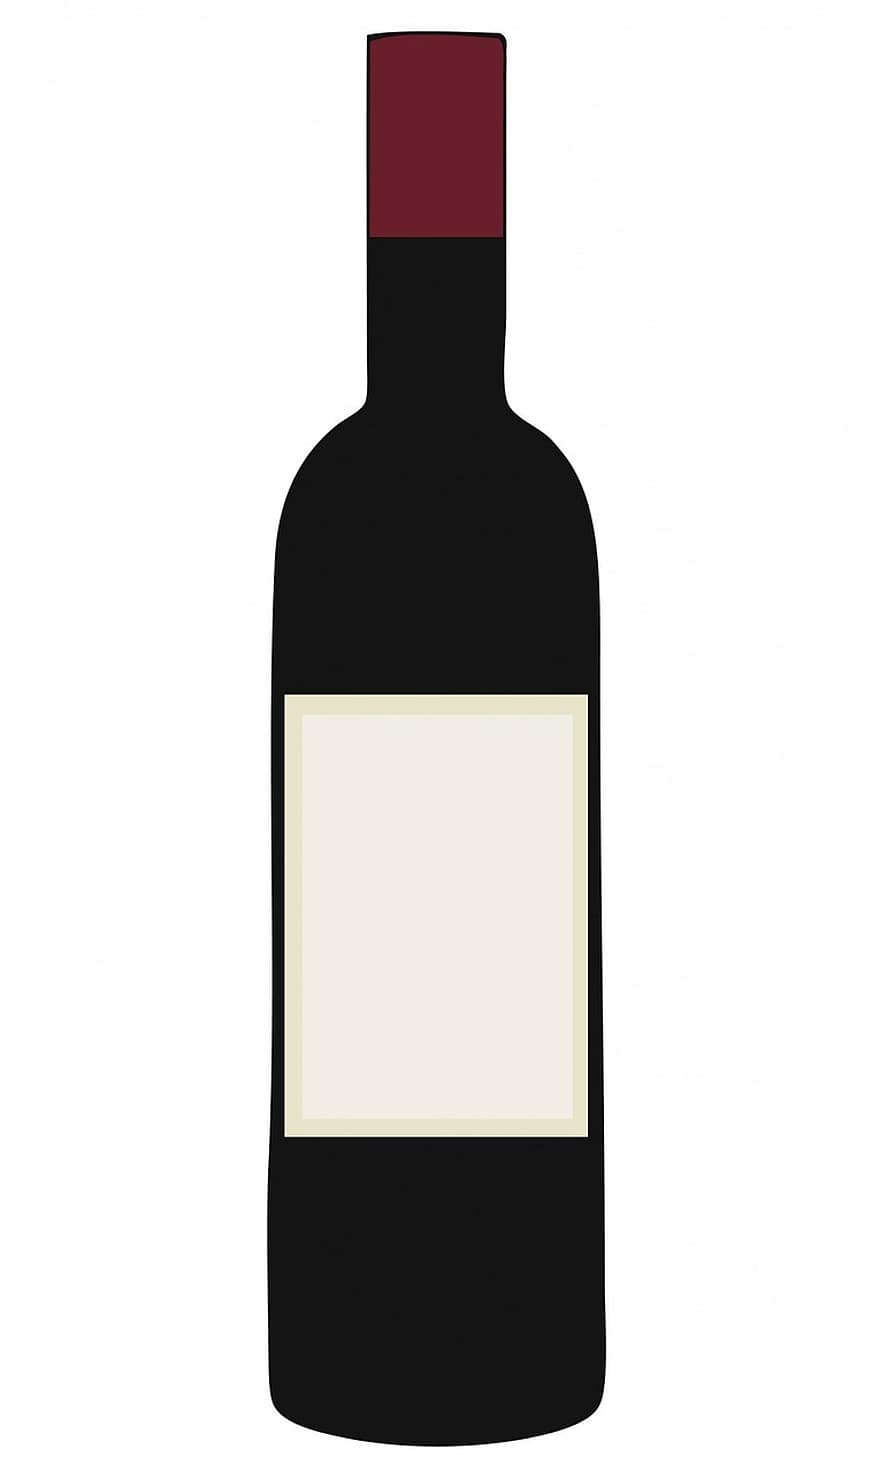 vin, sticla, roșu, sticlă de vin, vin rosu, gol, eticheta, etichetă necompletată, Sticla de ilustrare